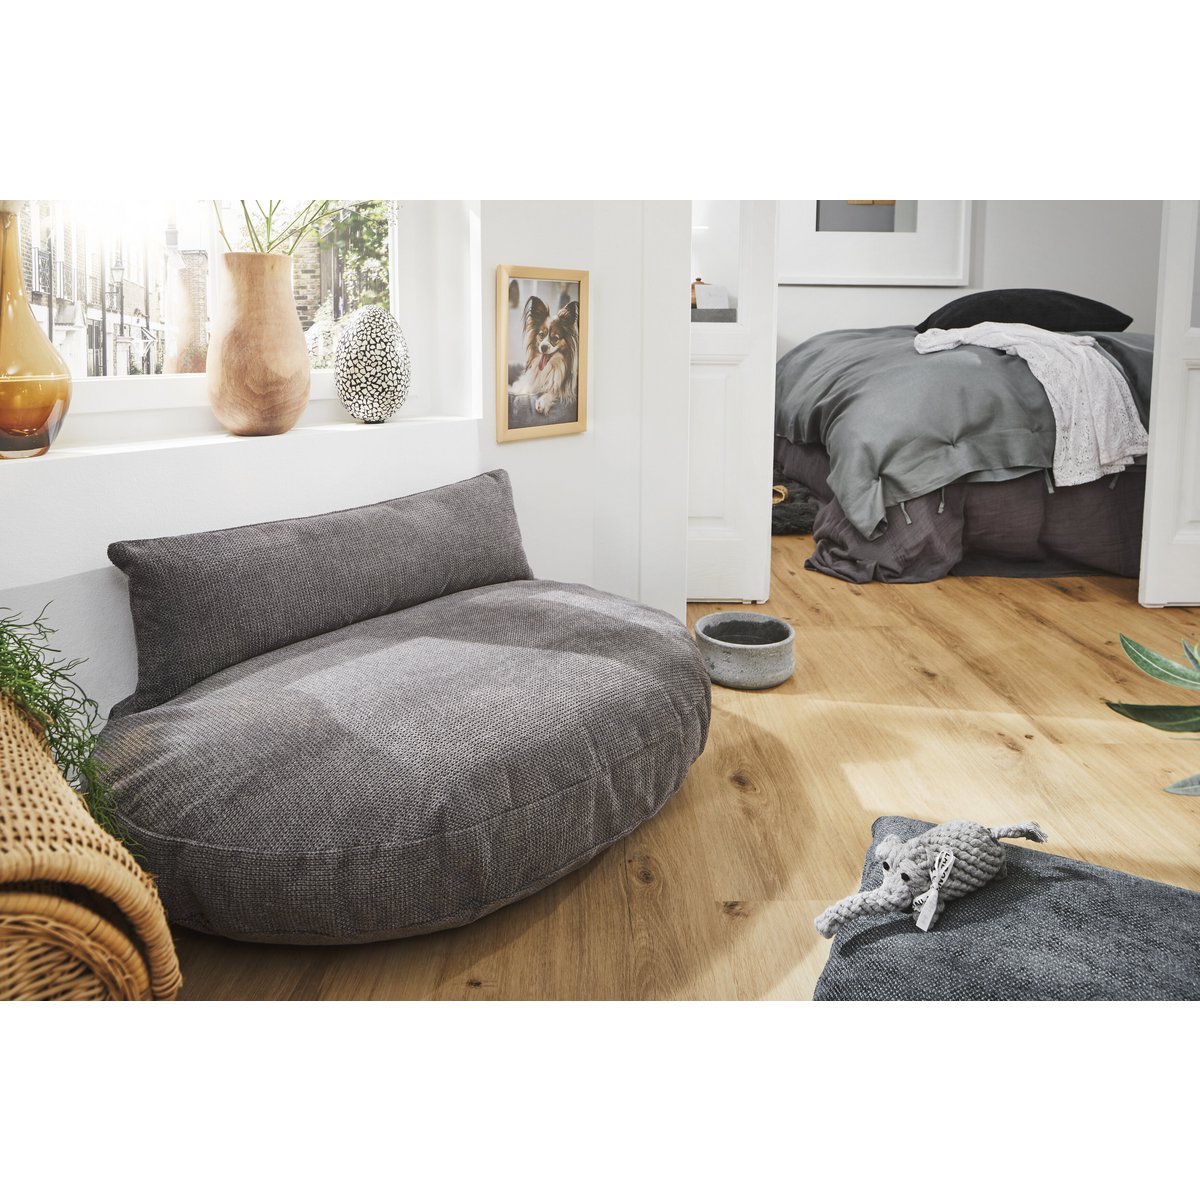 PRADO - TUDOR design hondenmandHet PRADO hondenbed van LABONI is een bekroond, stijlvol en comfortabel bed voor honden. Het heeft een klassieke framestructuur en een duurzame bekleding. De matras LABONIwafwafPRADO - TUDOR design hondenmand